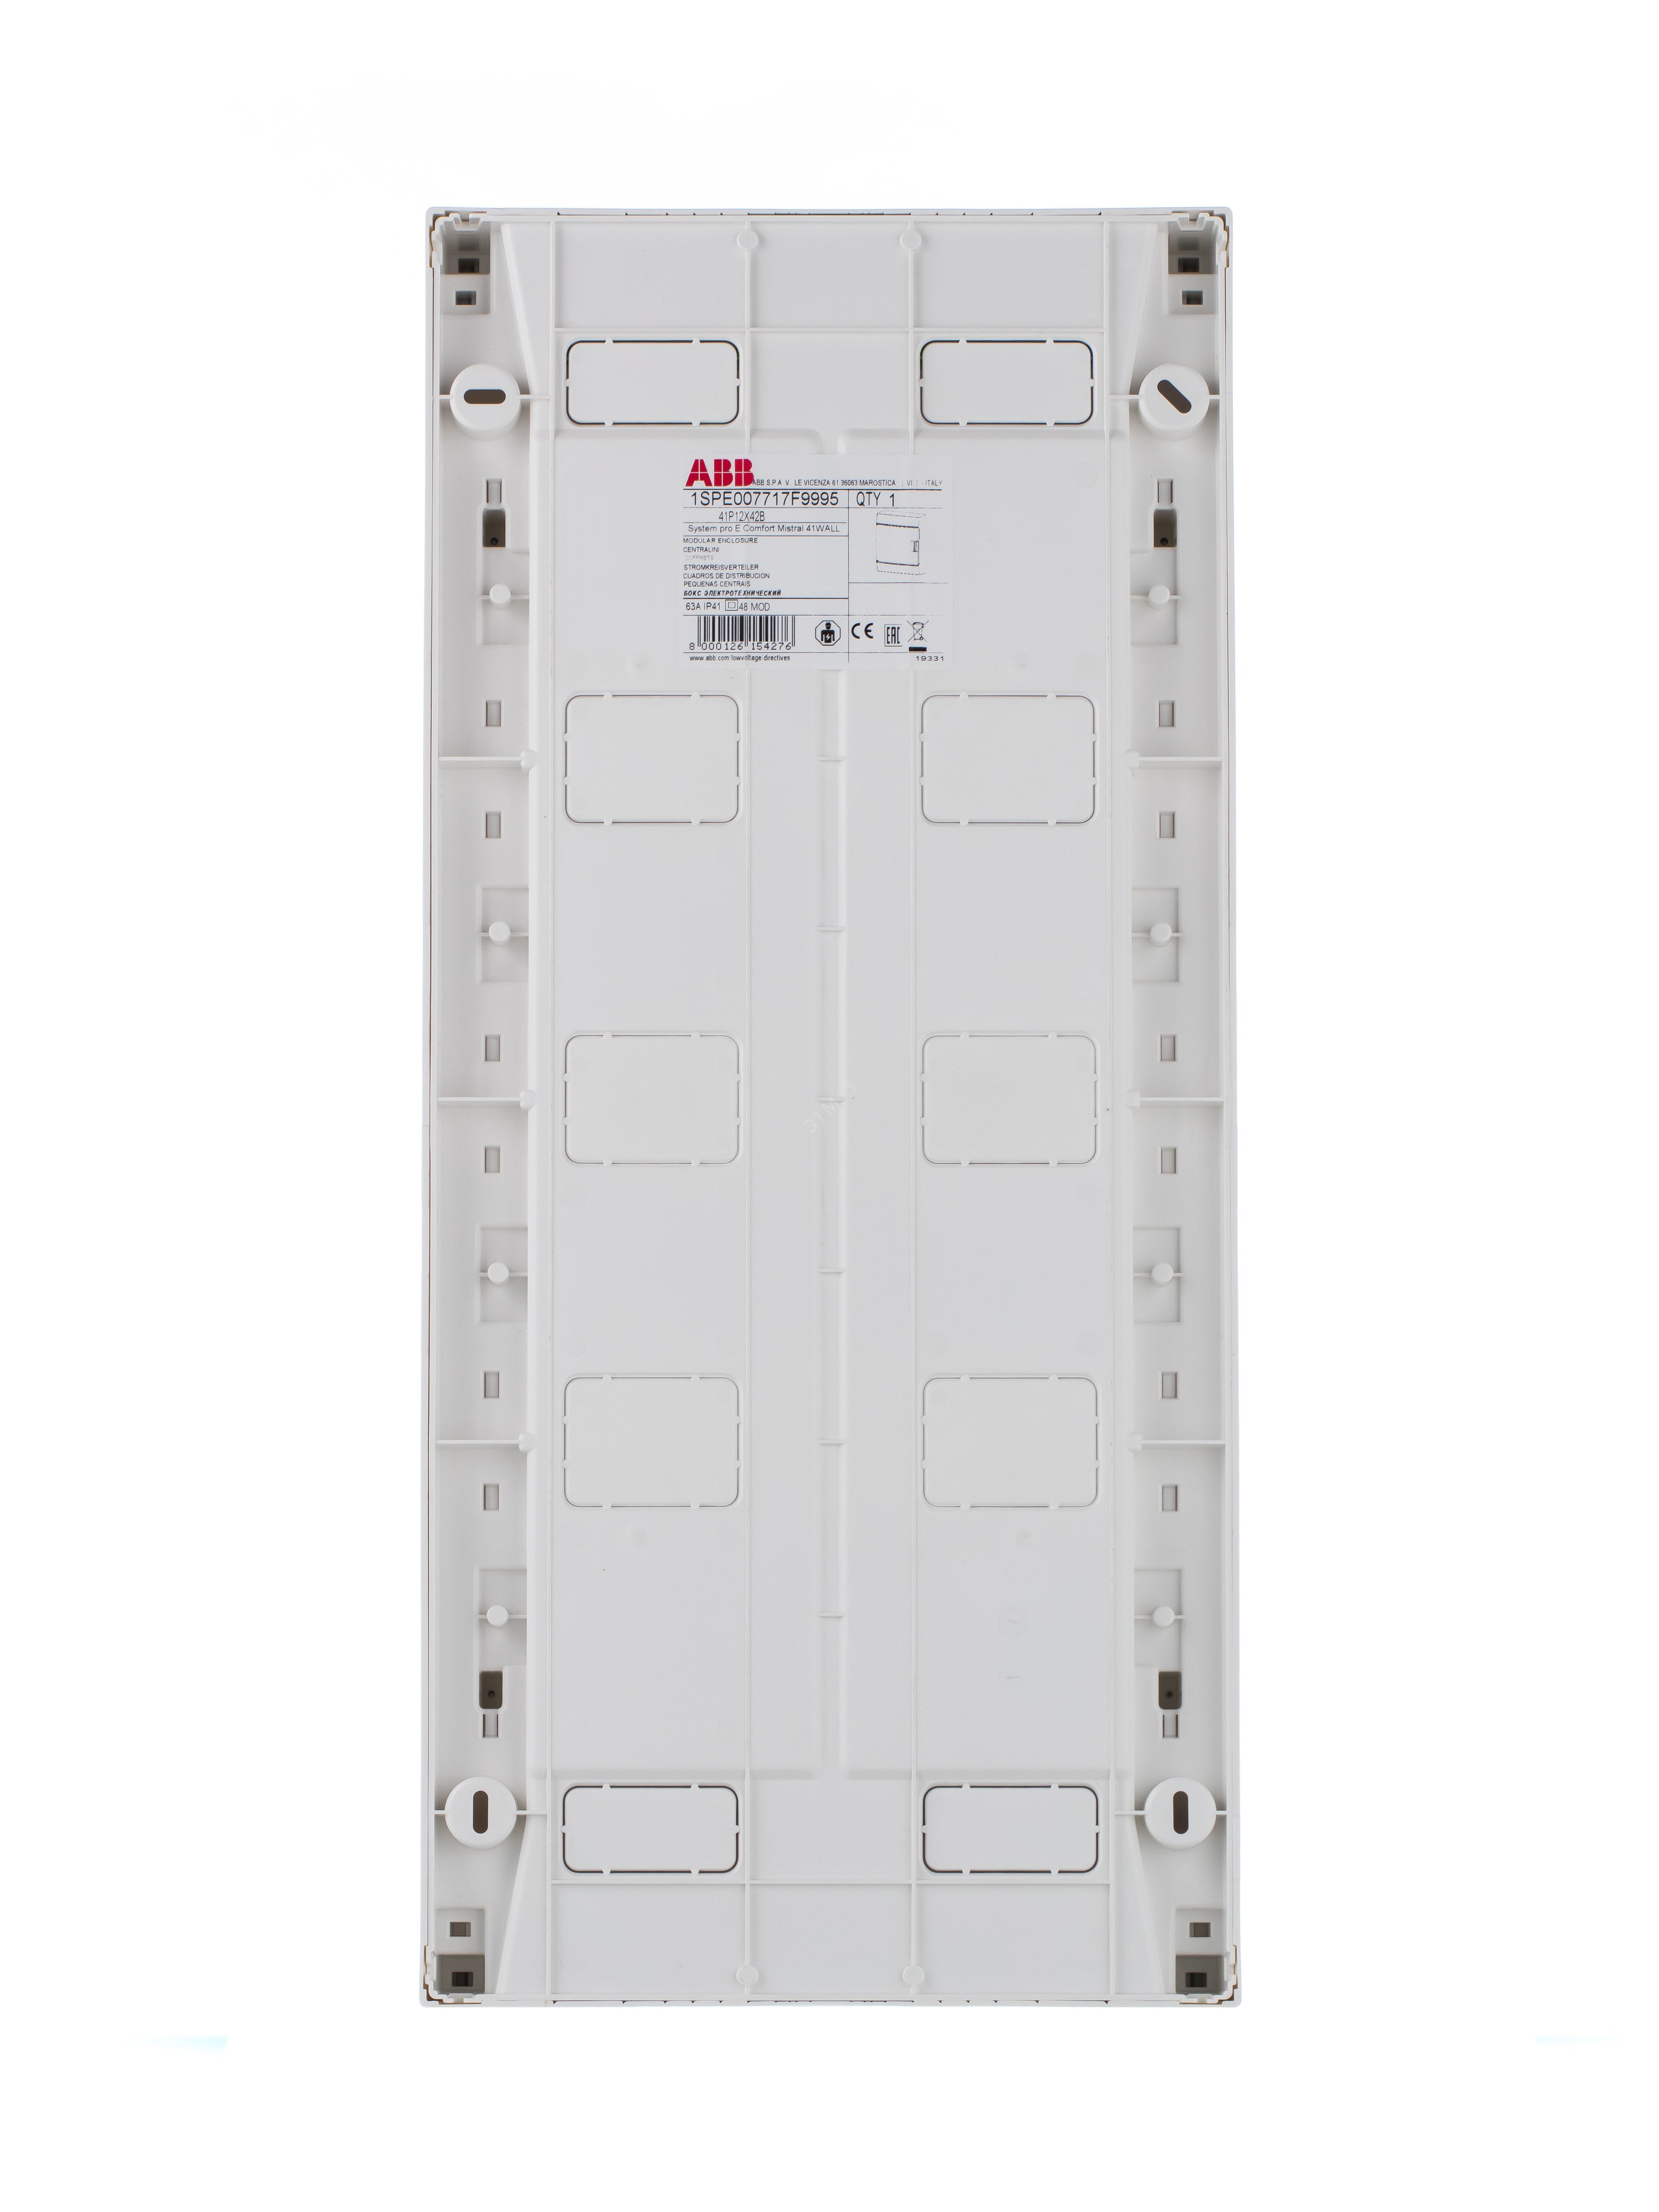 Щит распределительный навесной ЩРн-п-48 пластиковый Mistral41 серая прозрачная дверь с клеммами IP41 (41P12X42B) 1SPE007717F9995 ABB - превью 6